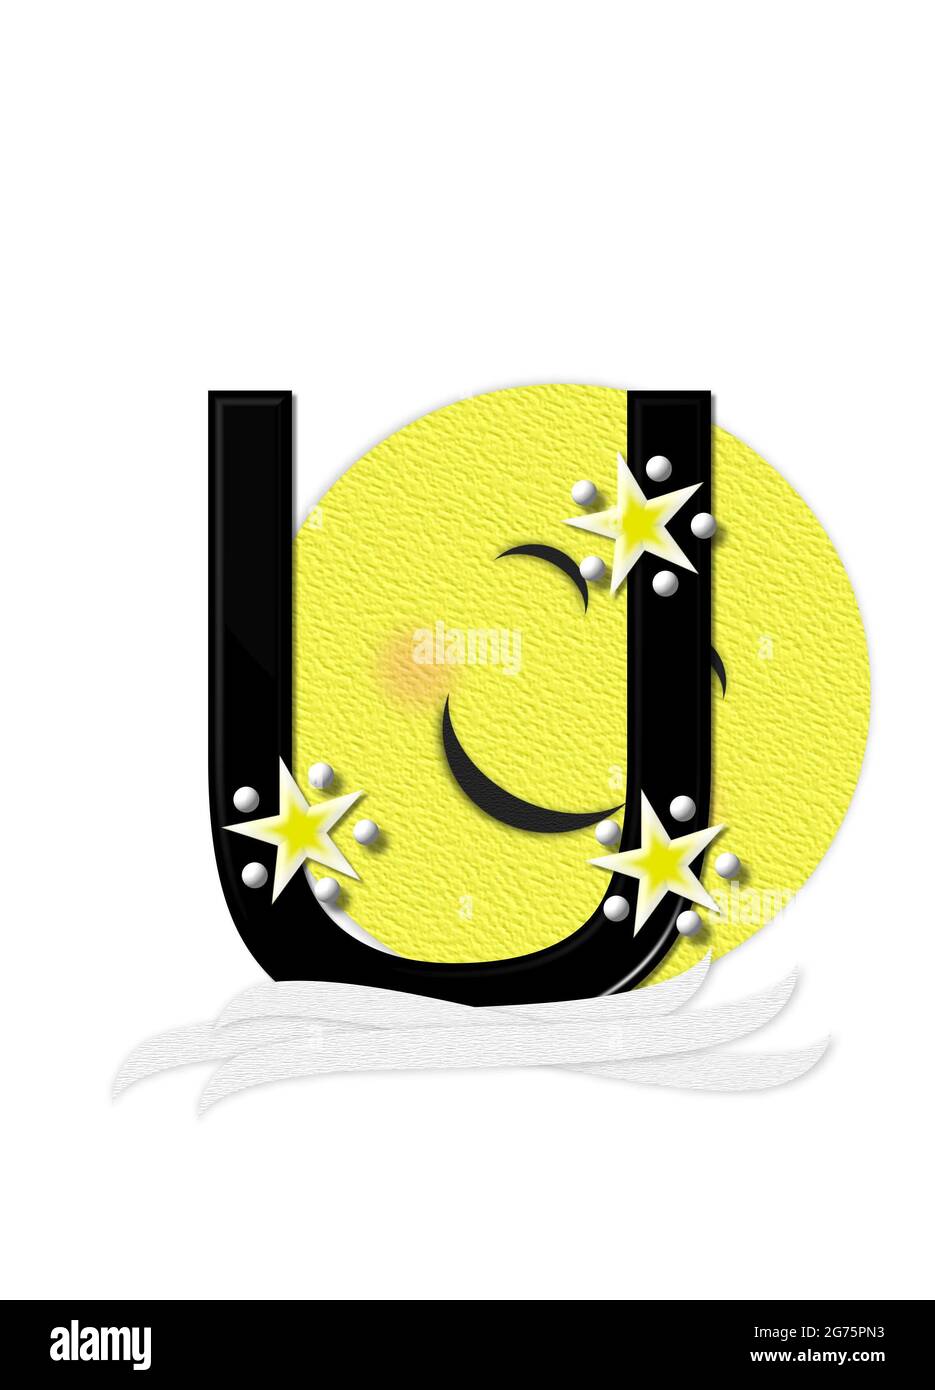 La lettera U, nell'insieme alfabetico "Moon Beam", è in 3D e nera. Stelle e pois di polka decorano la lettera. Un fascio di luna sorridente sbirra intorno alla lettera. Foto Stock